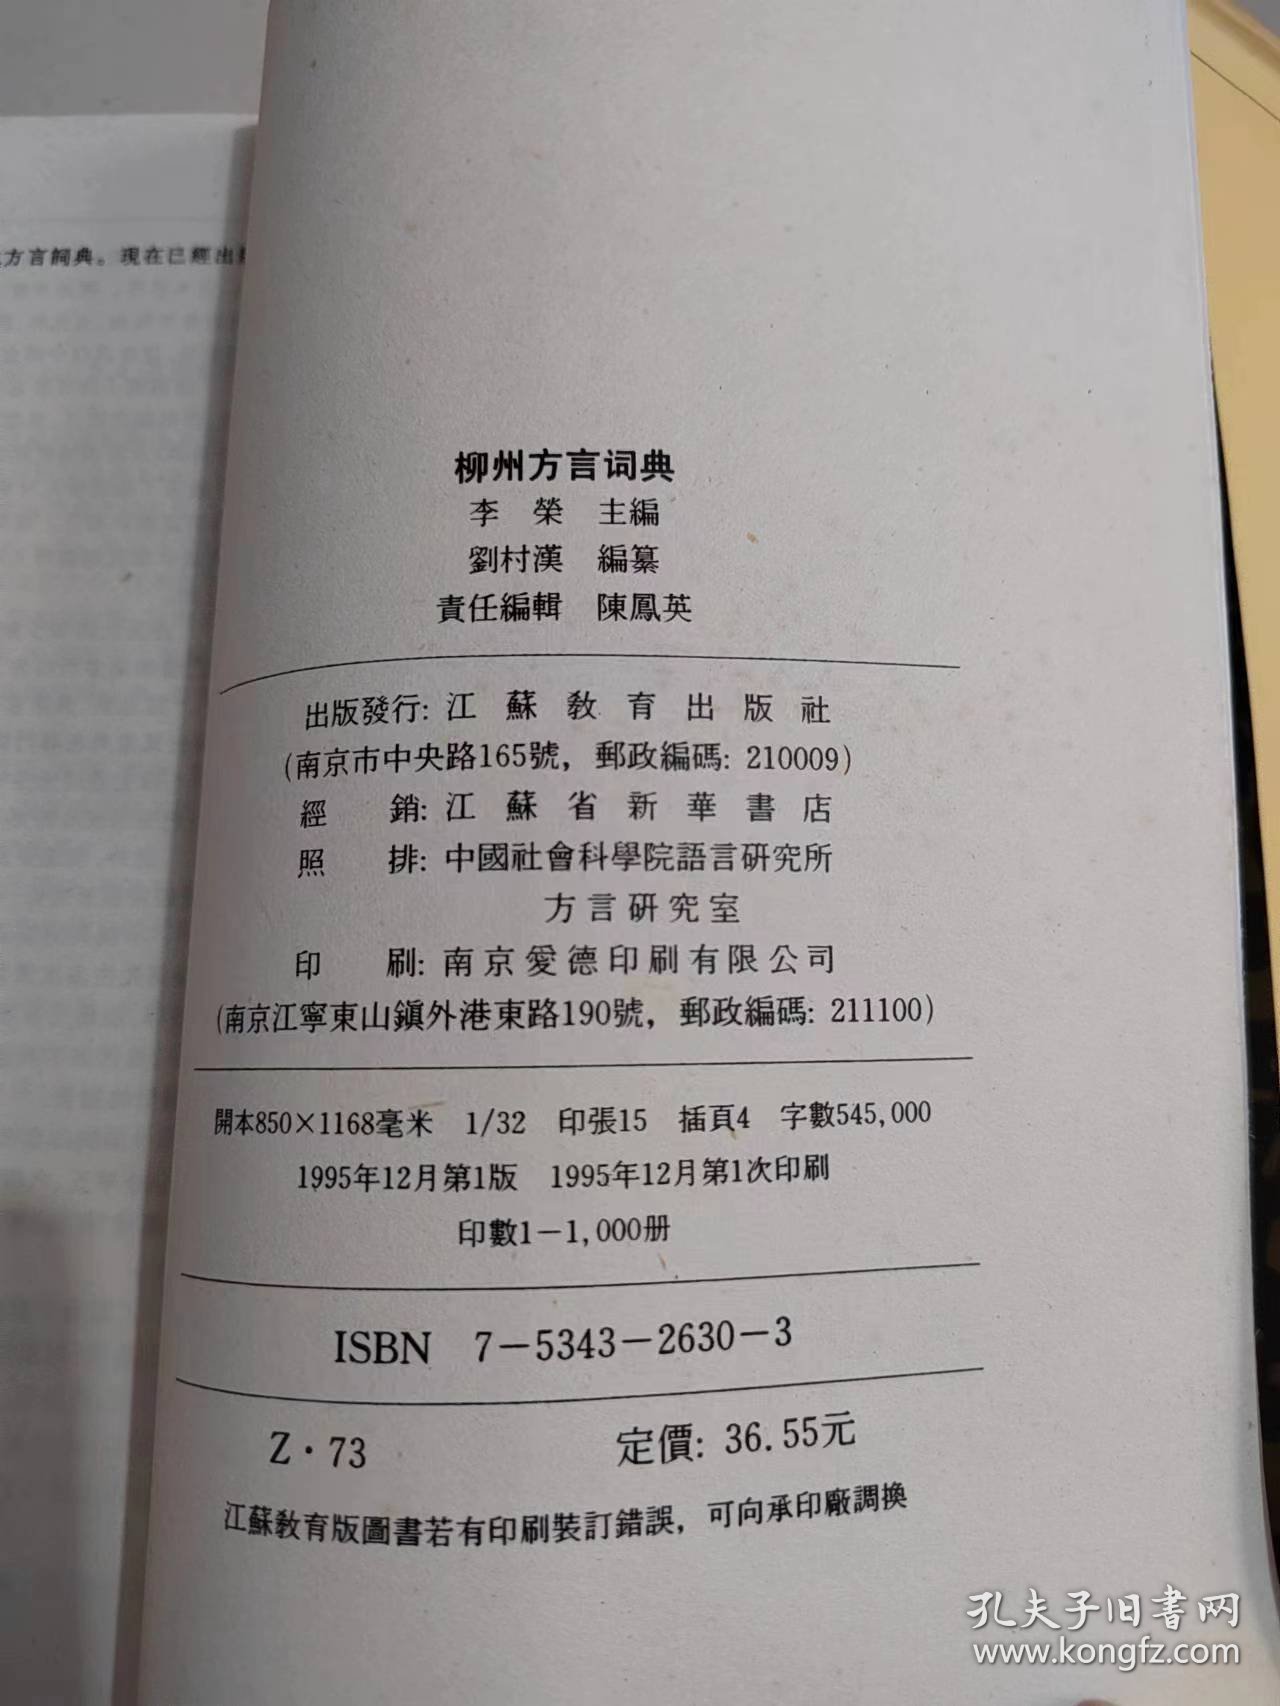 《柳州方言词典——现代汉语方言大词典·分卷》